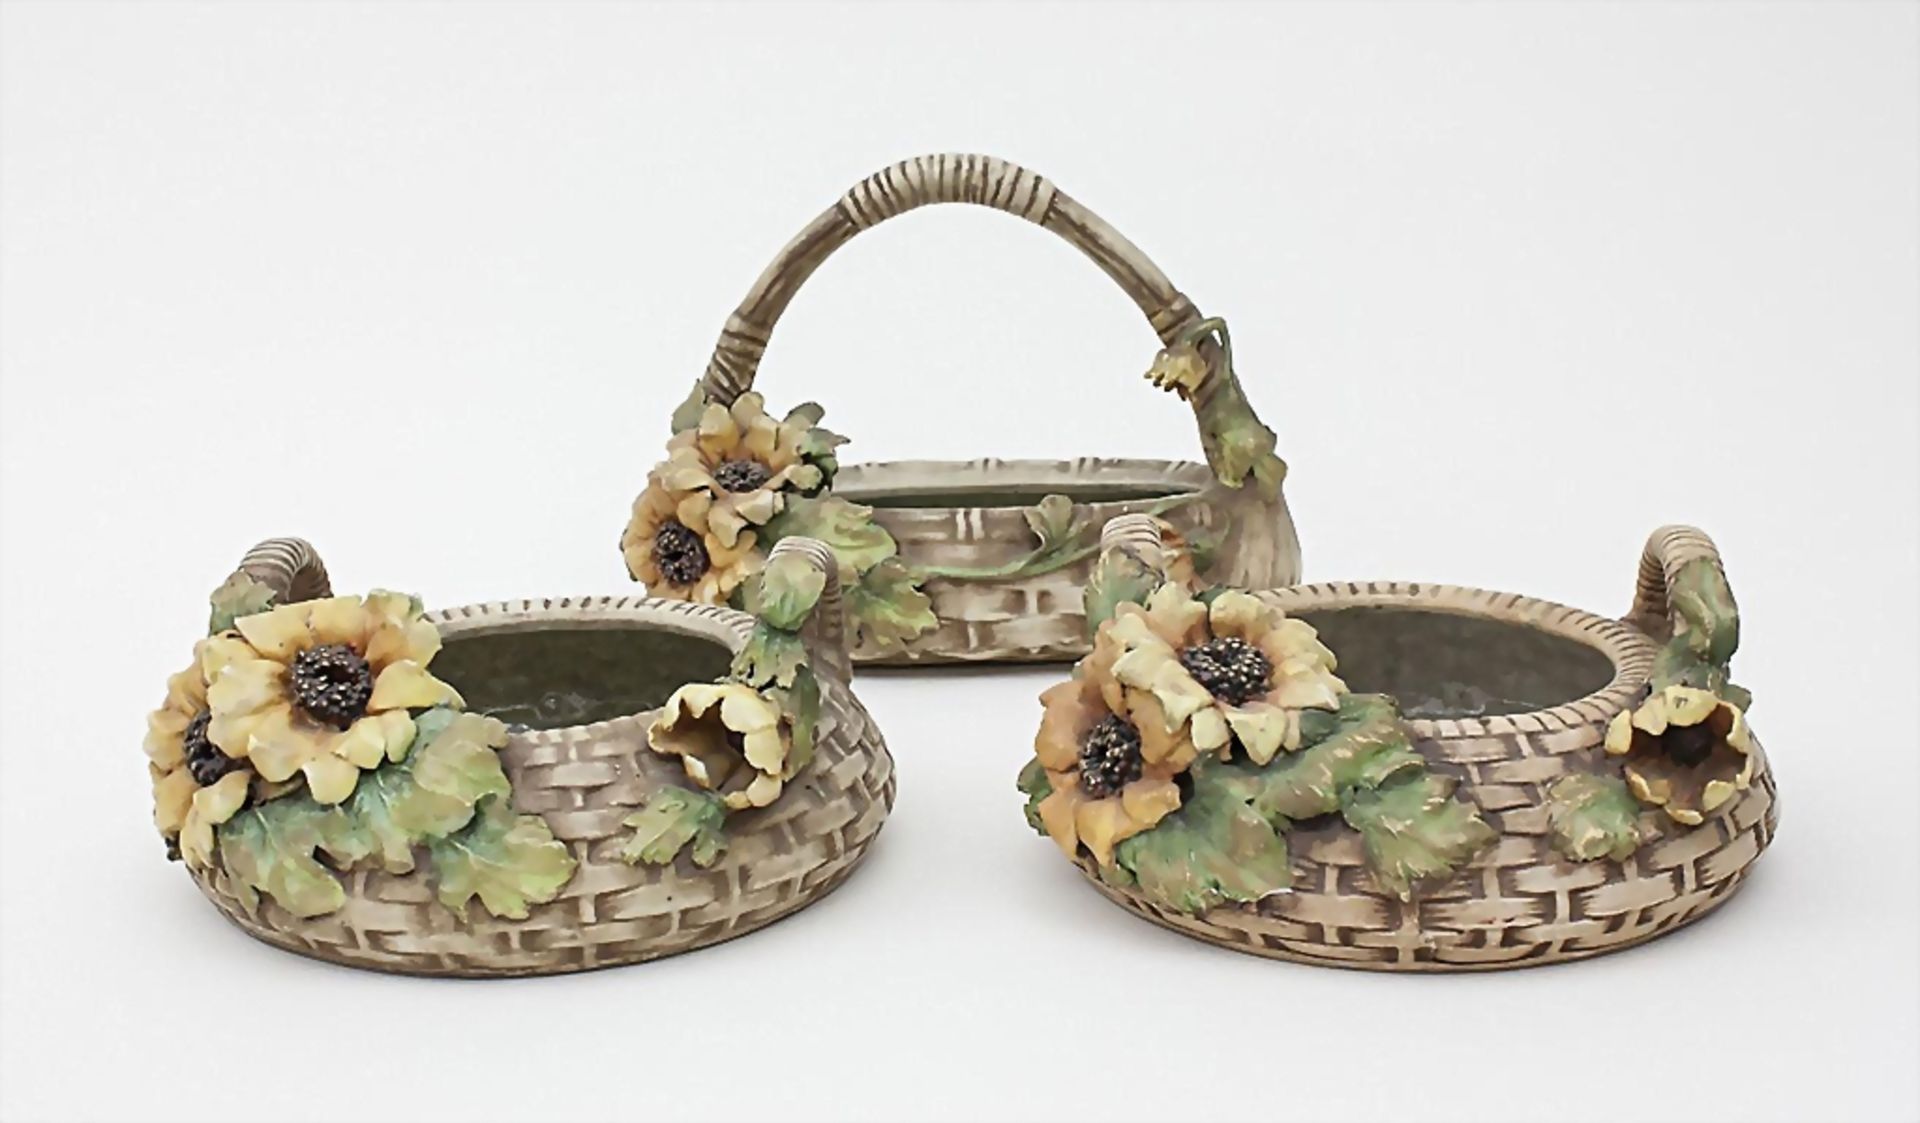 3 Jugendstil-Korbschalen mit Sonnenblumen/3 Art Nouveau Ceramic Baskets with Sunflowers, Amphora